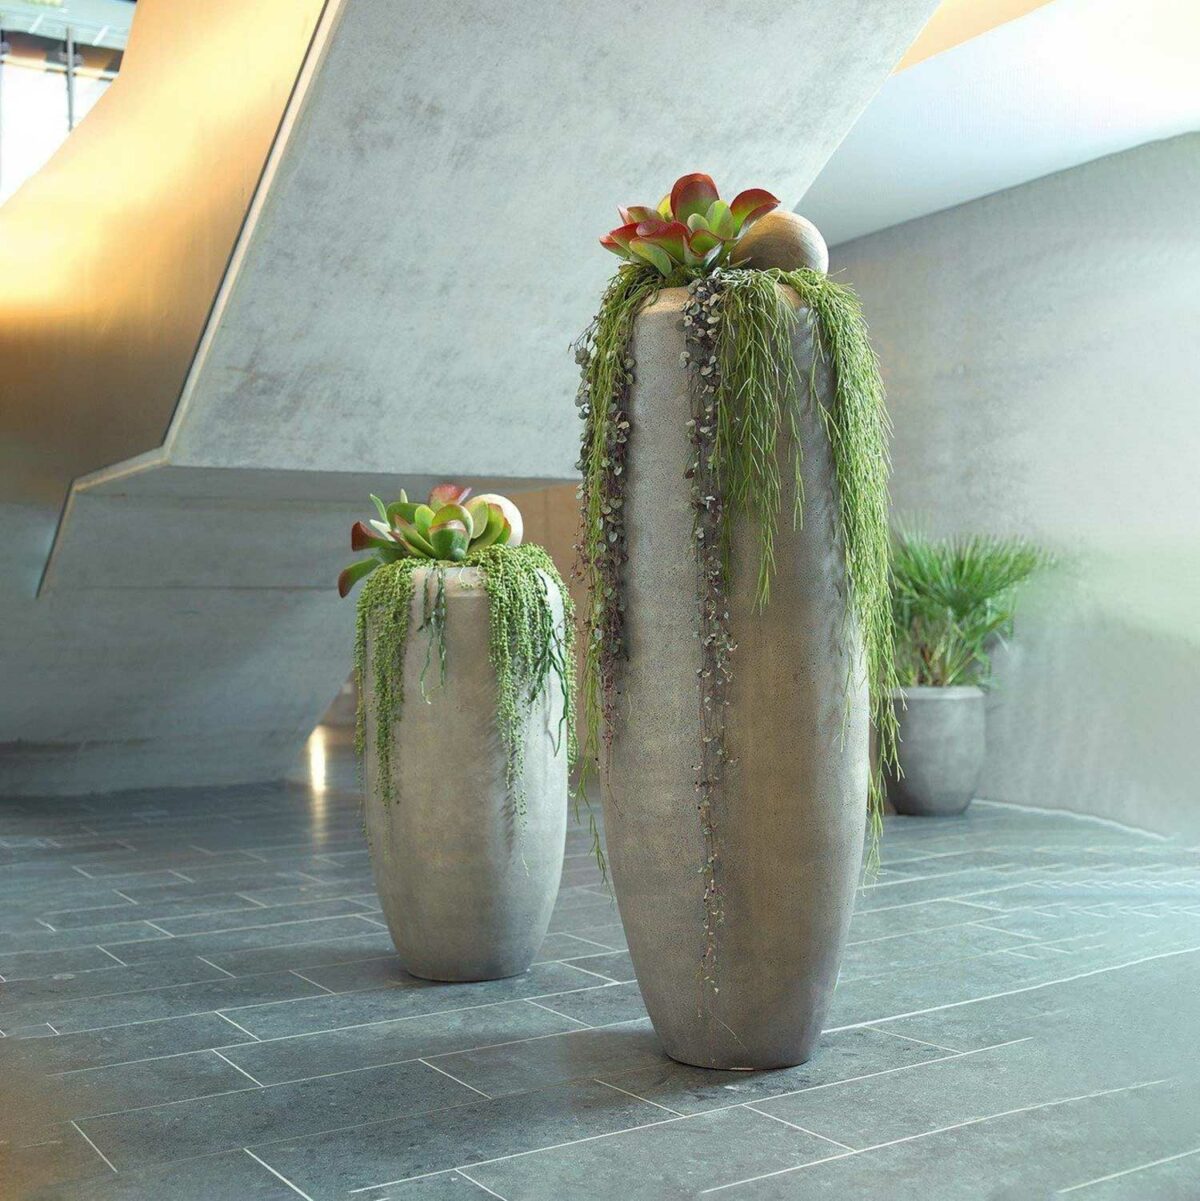 HAVANA floor vase gray H 100 cm